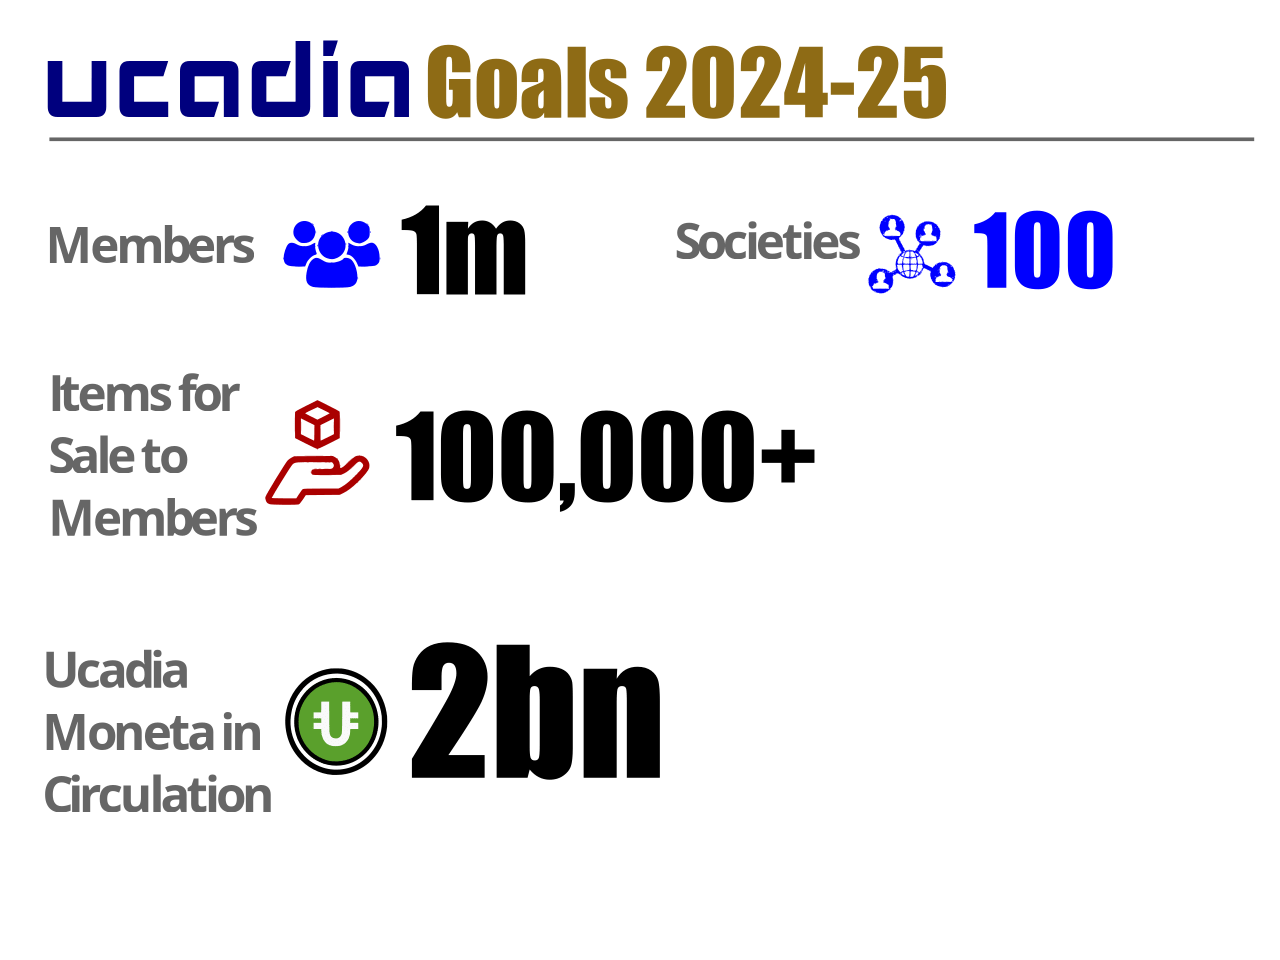 About Ucadia Societies Goals 2022-23